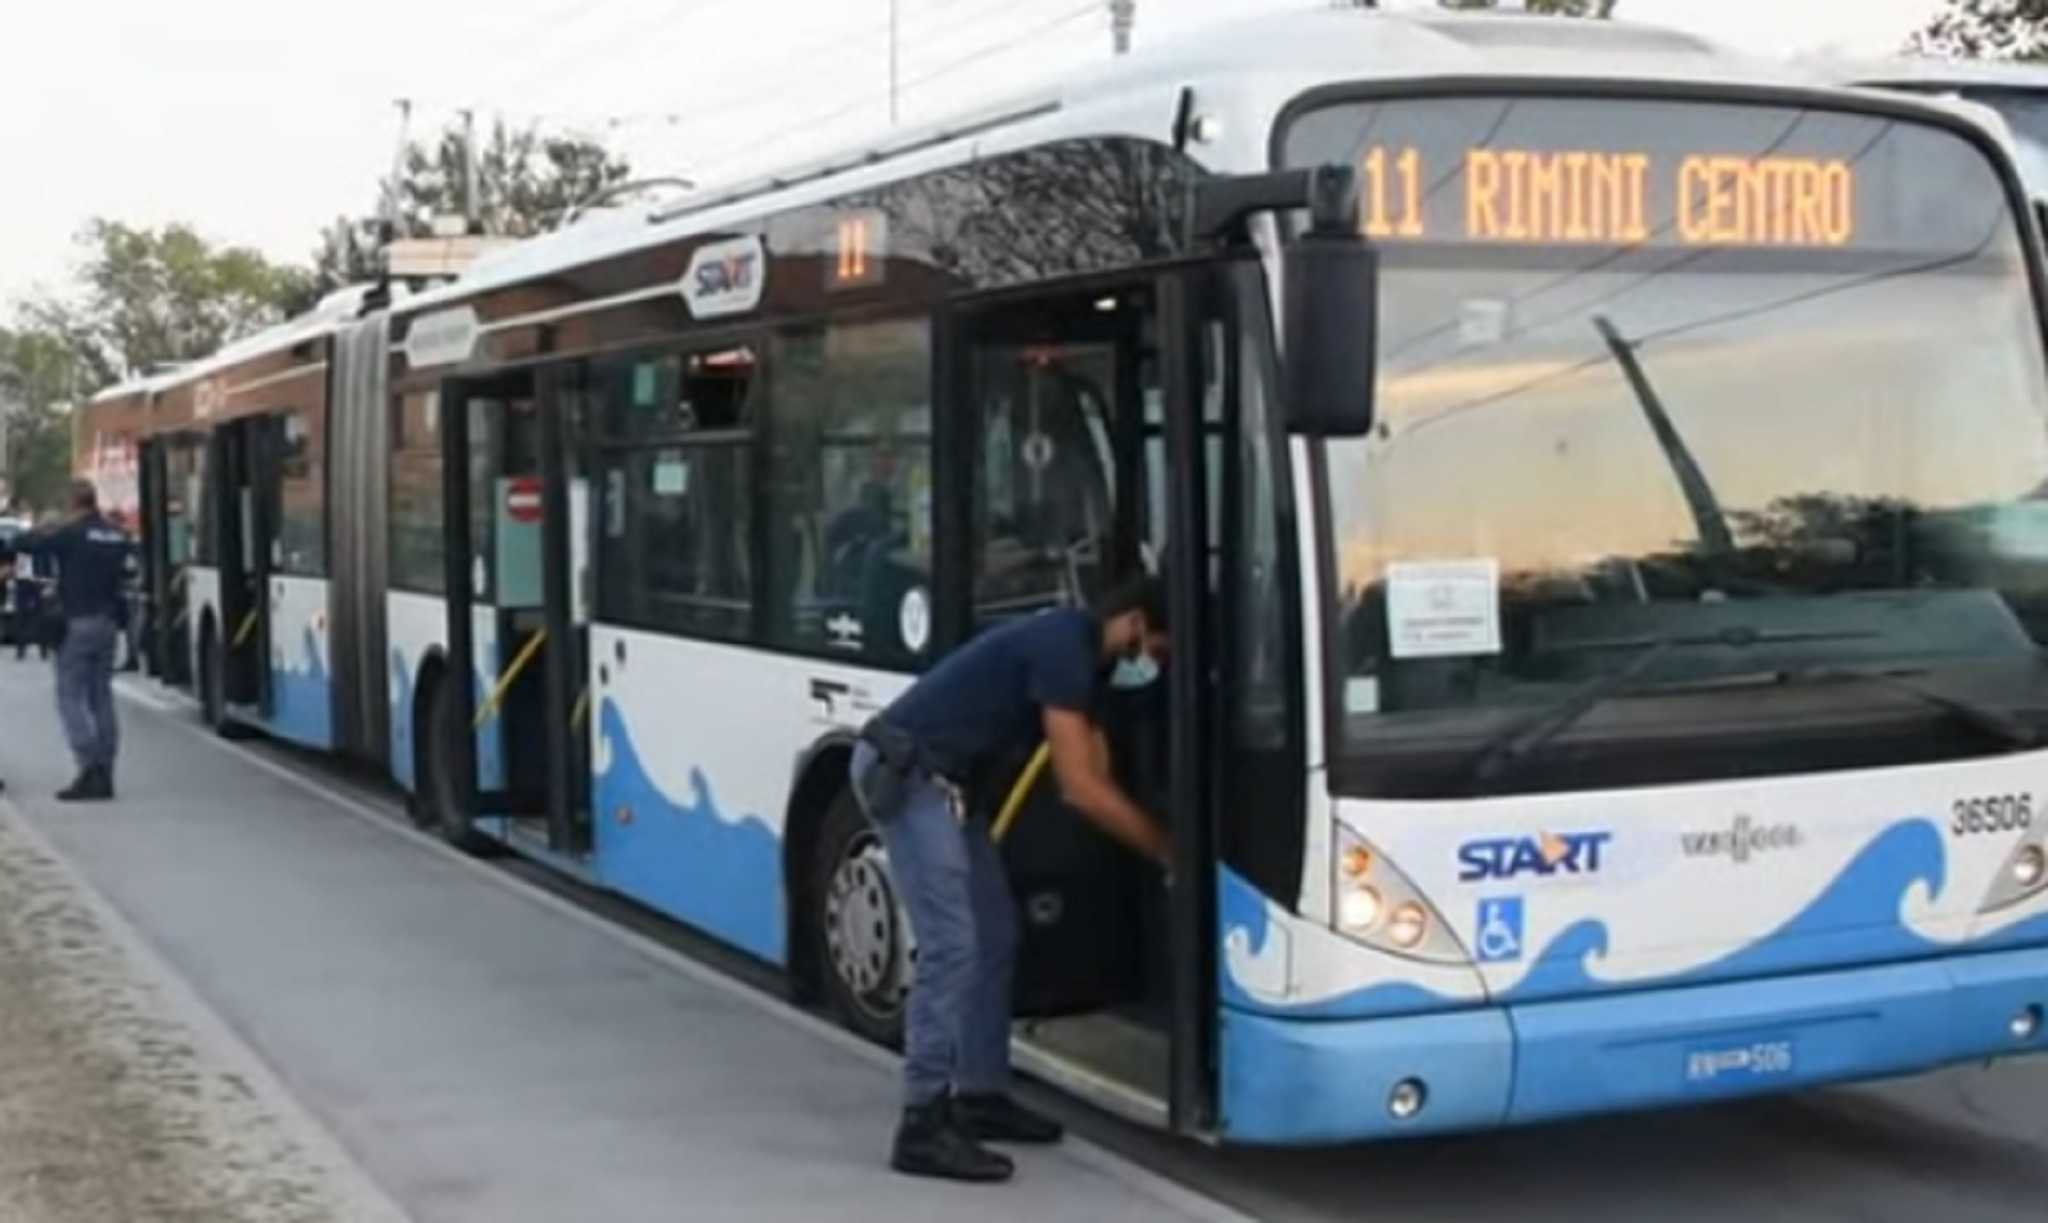 Ιταλία: Επιβάτης λεωφορείου σε αμόκ μαχαίρωσε 5 άτομα (βίντεο)